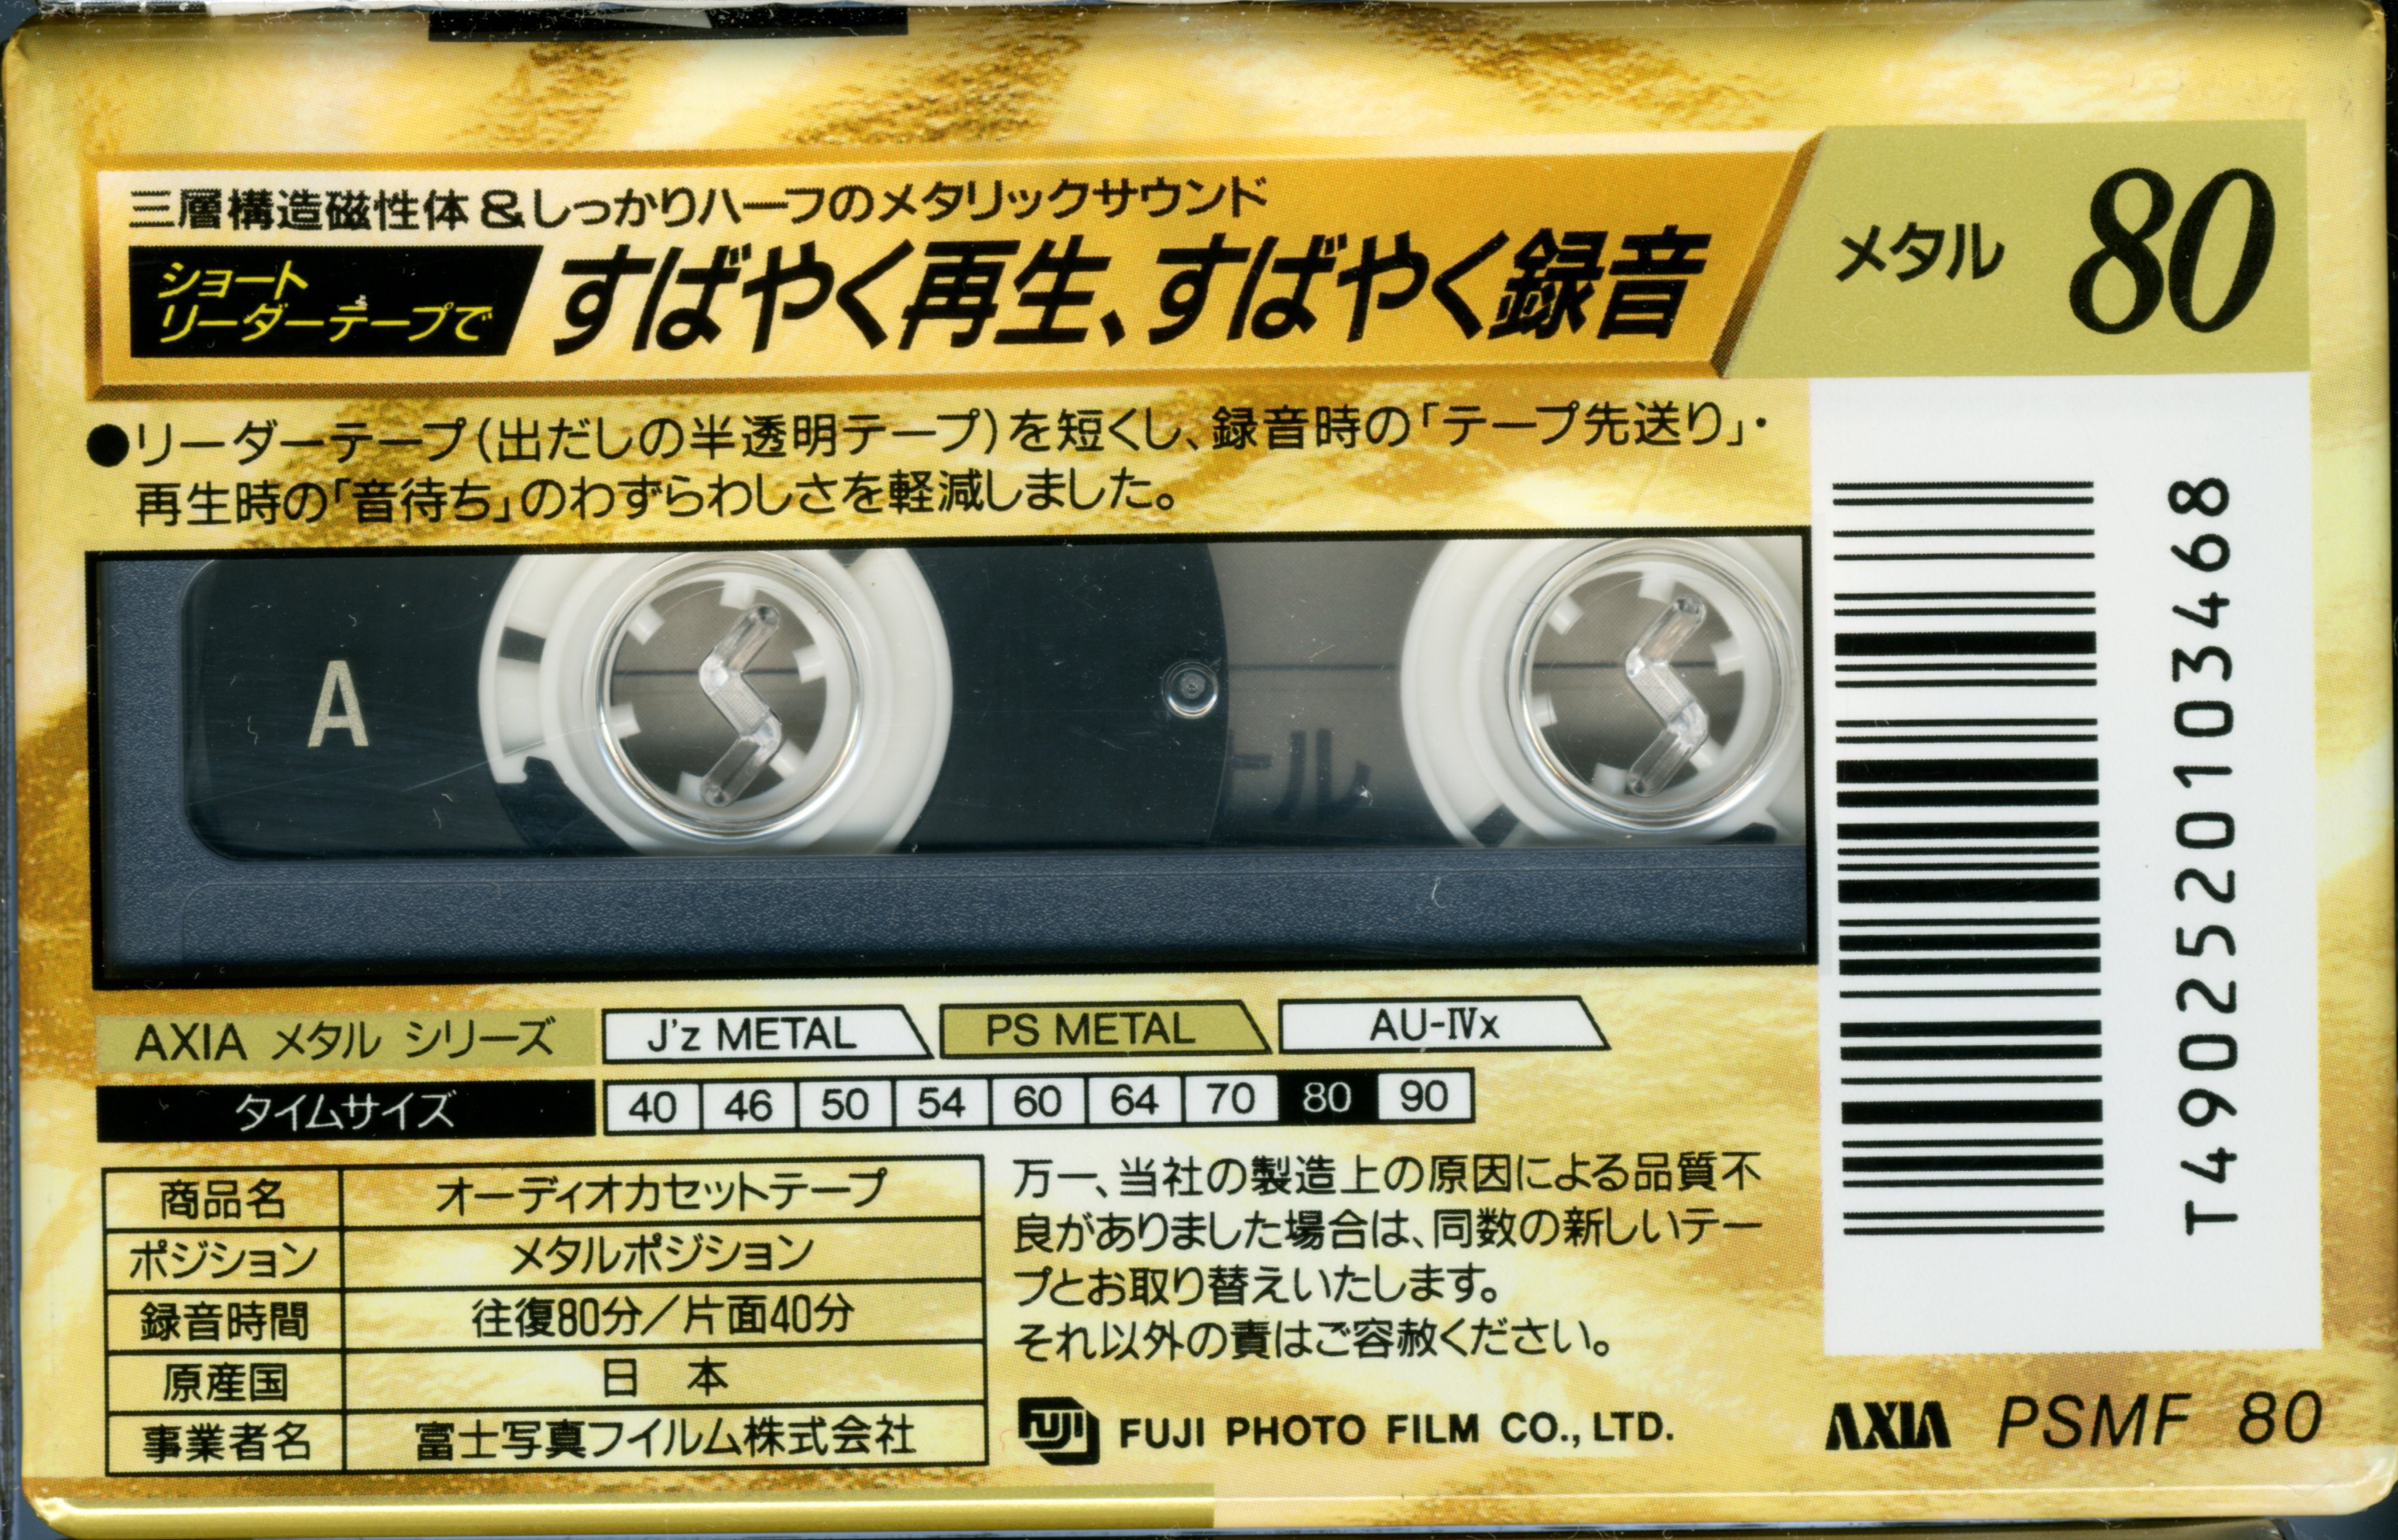 AXIA カセットテープ J'z METAL 46 2PACK x 5 pn-jambi.go.id